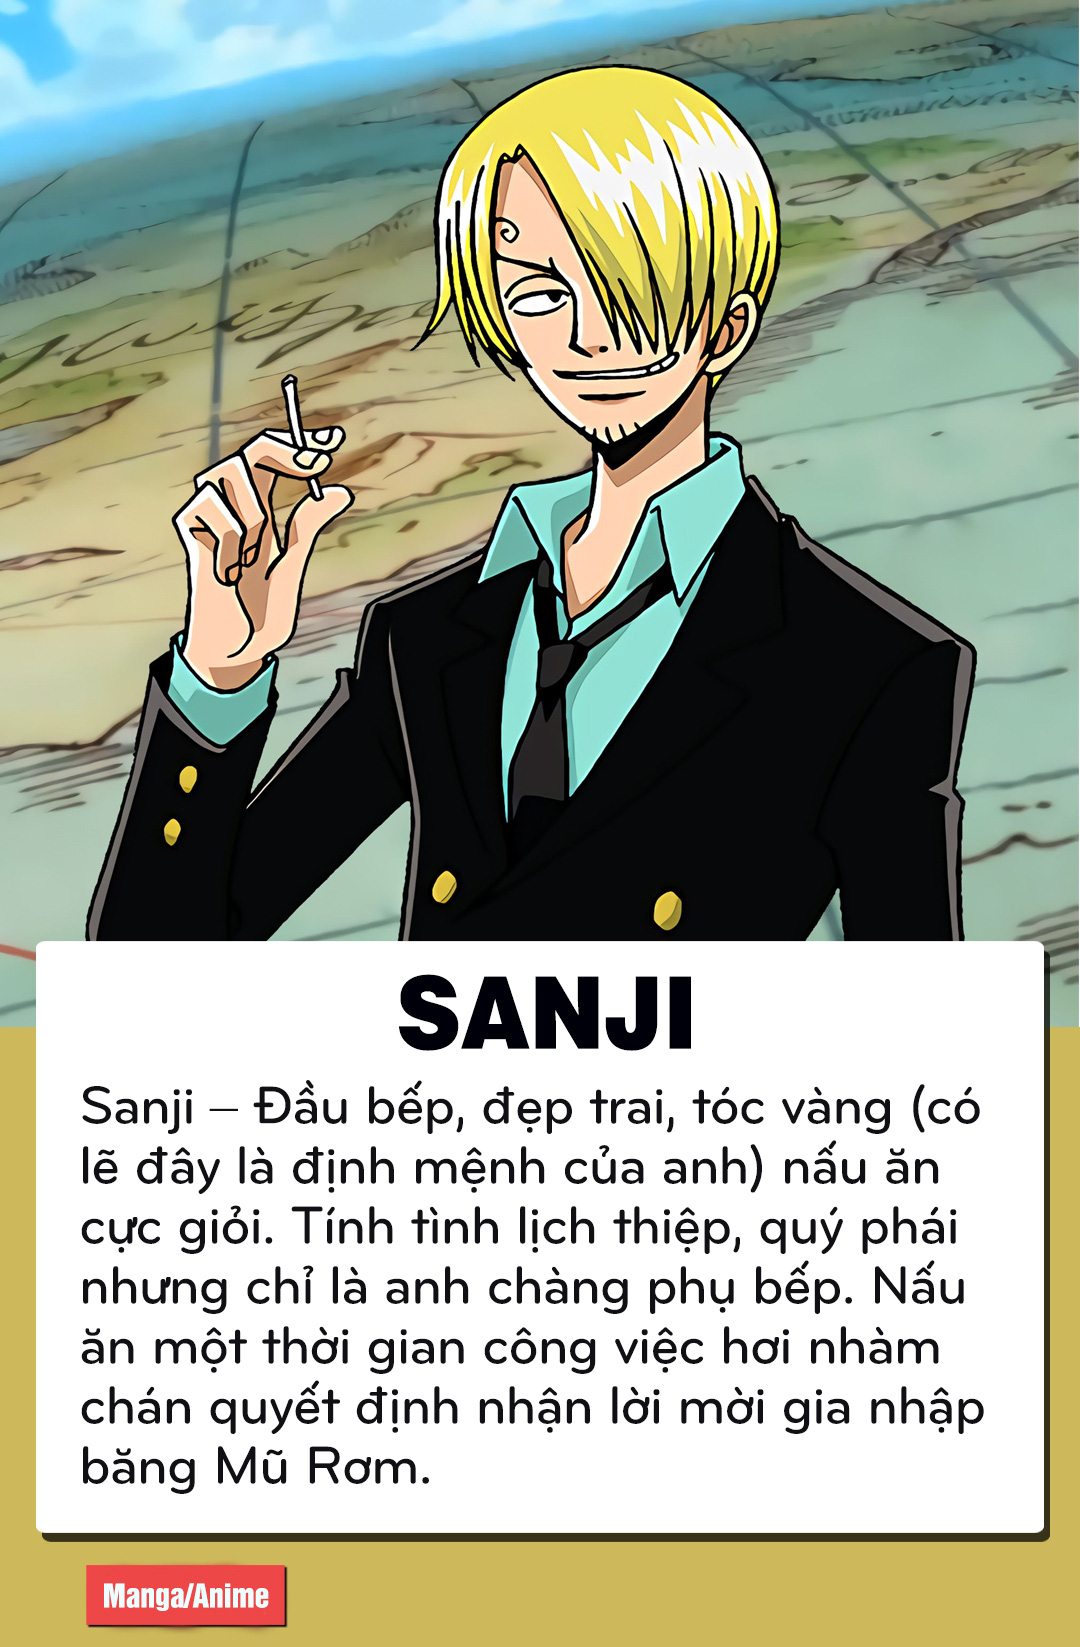 One Piece: Sanji – Zoro và câu chuyện của 2 soái ca băng Mũ Rơm ...